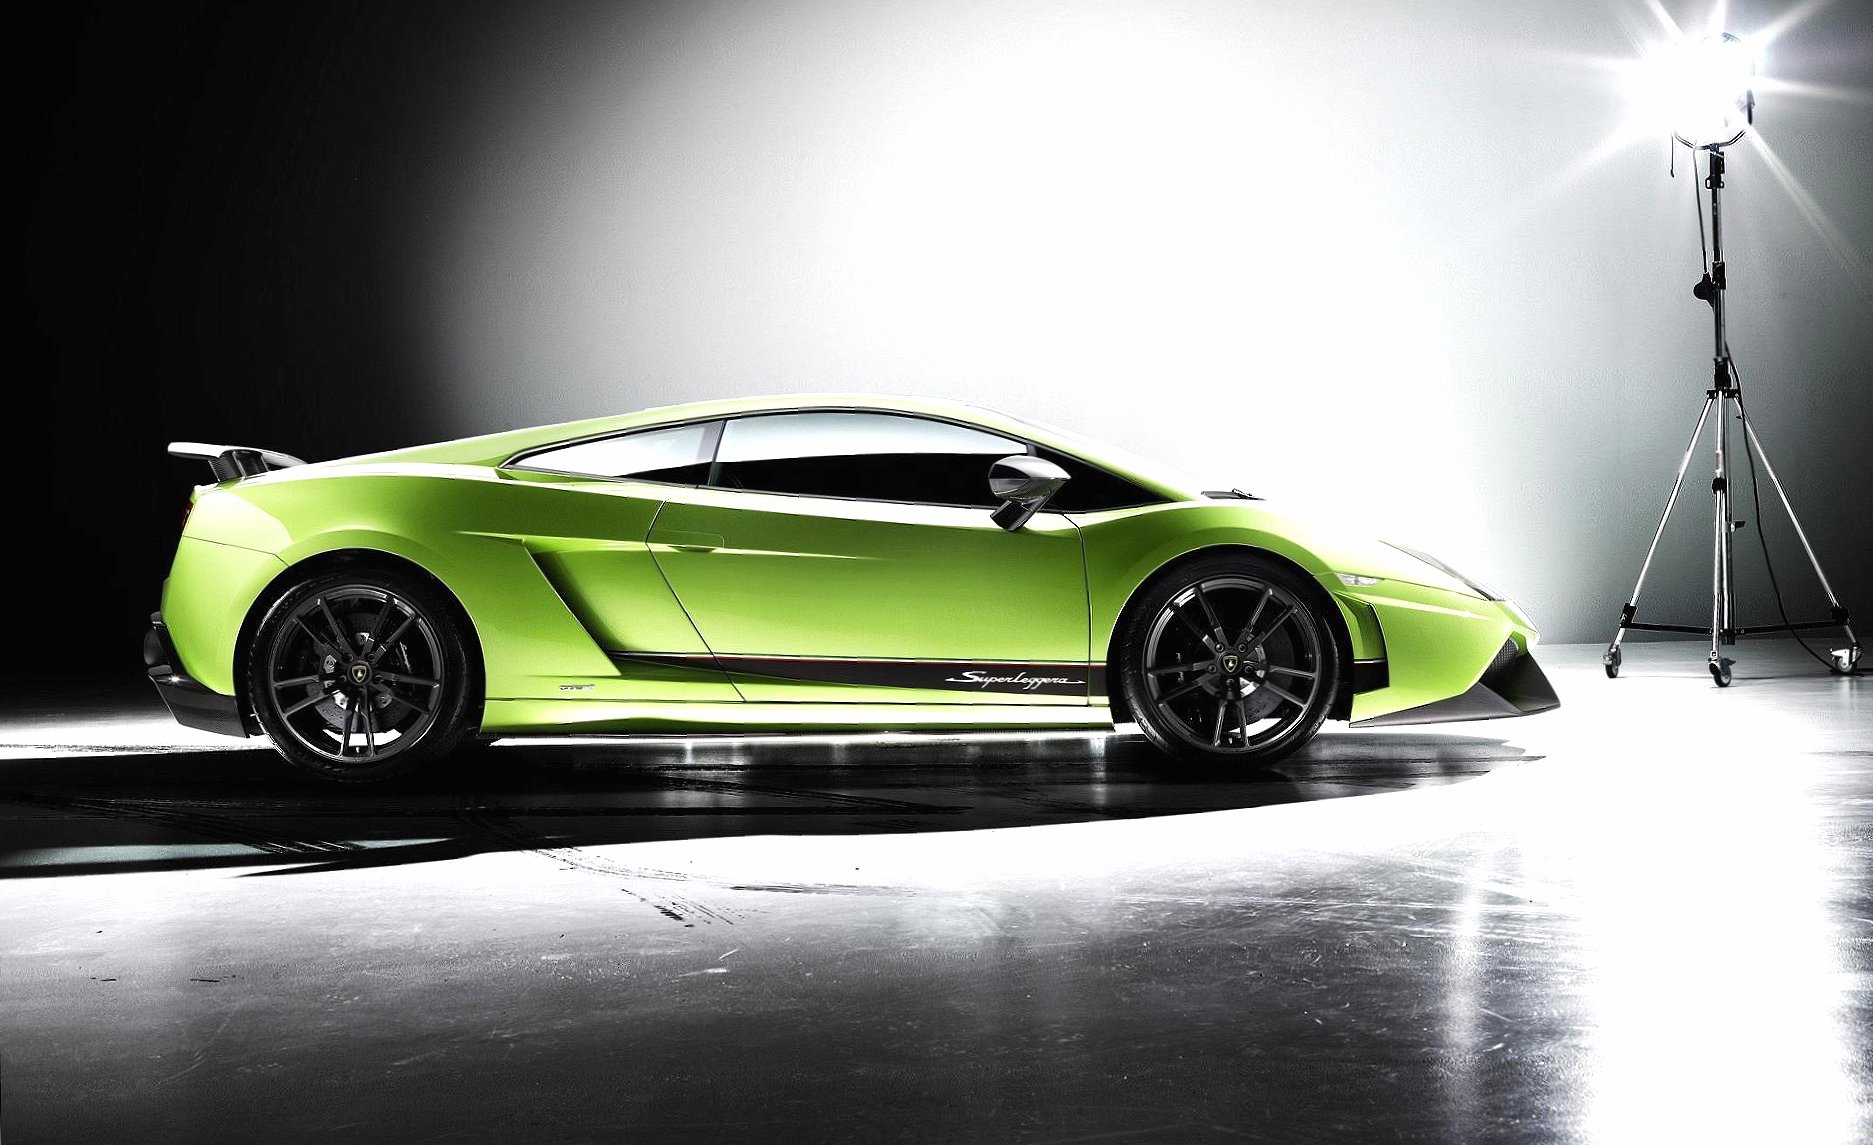 Lamborghini gallardo lp 570 4 superleggera wallpapers HD quality